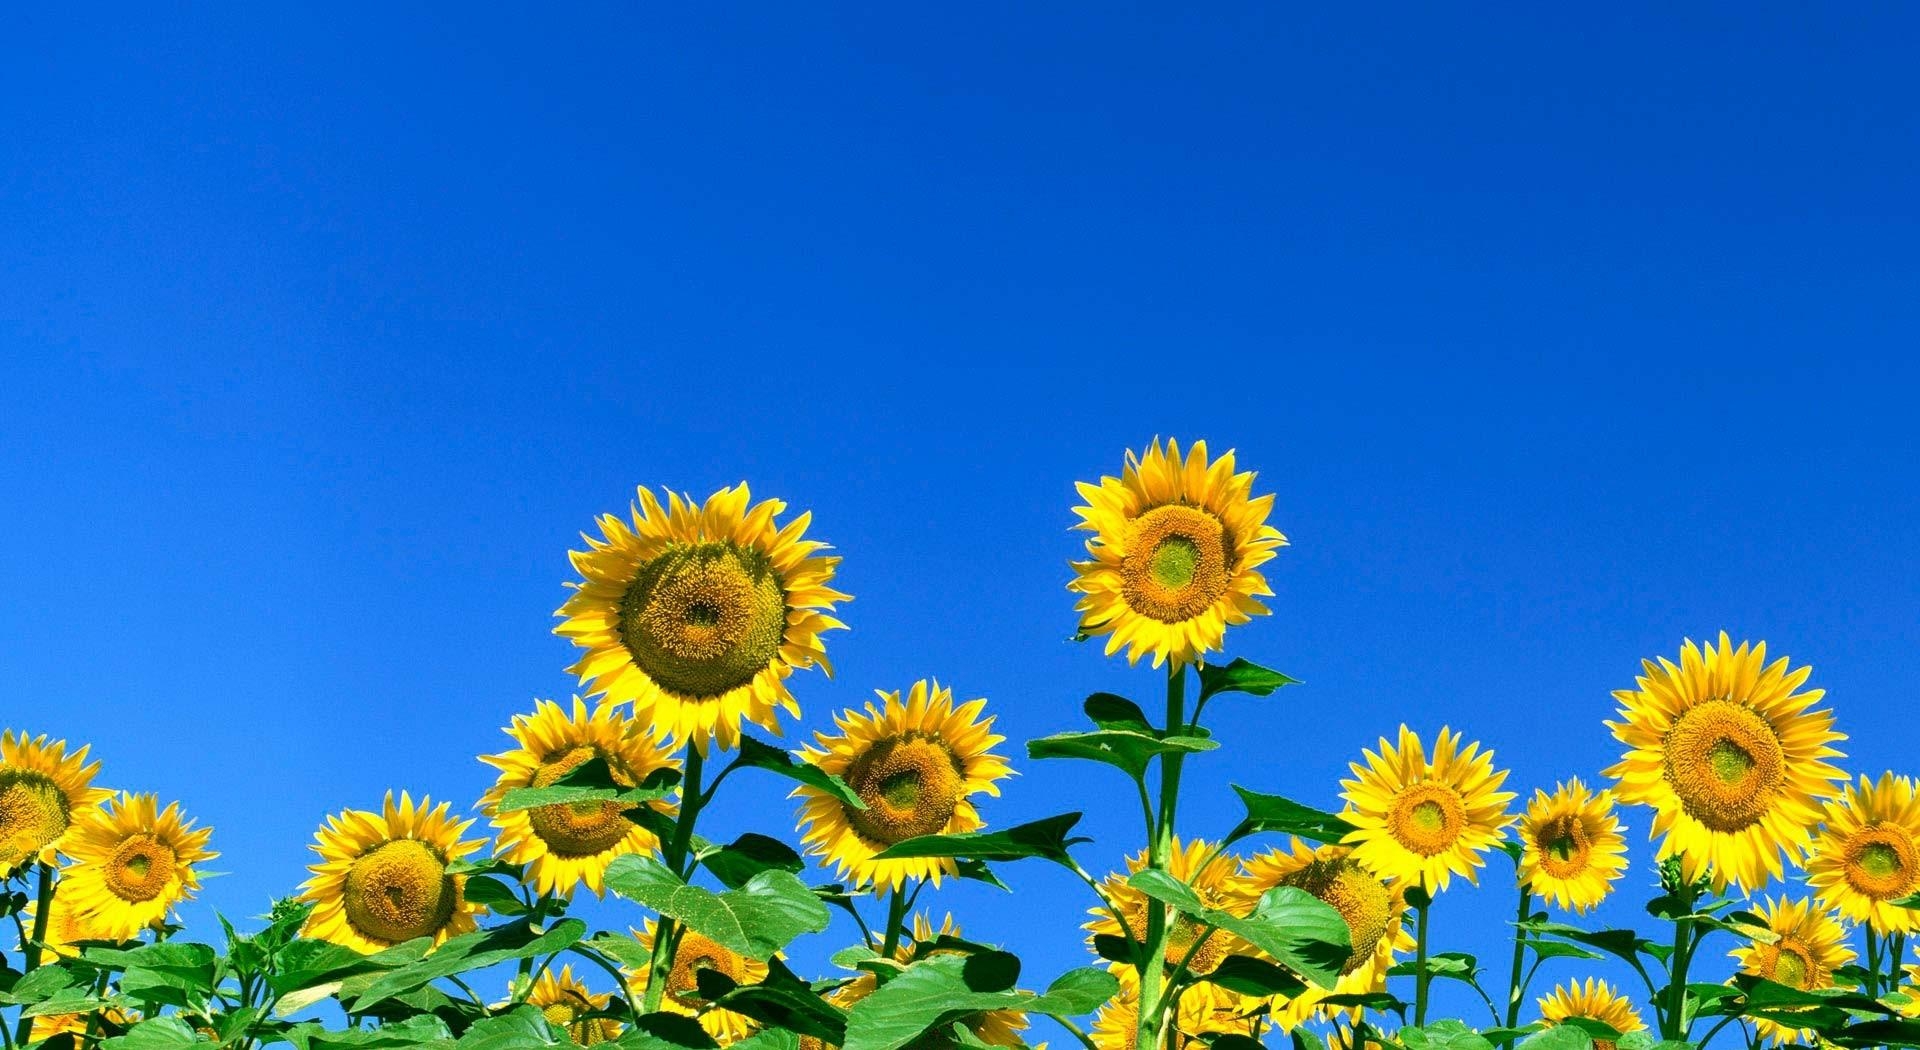 Скачать обои бесплатно Солнечно, Подсолнухи, Небо, Поле, Цветы, Лето картинка на рабочий стол ПК